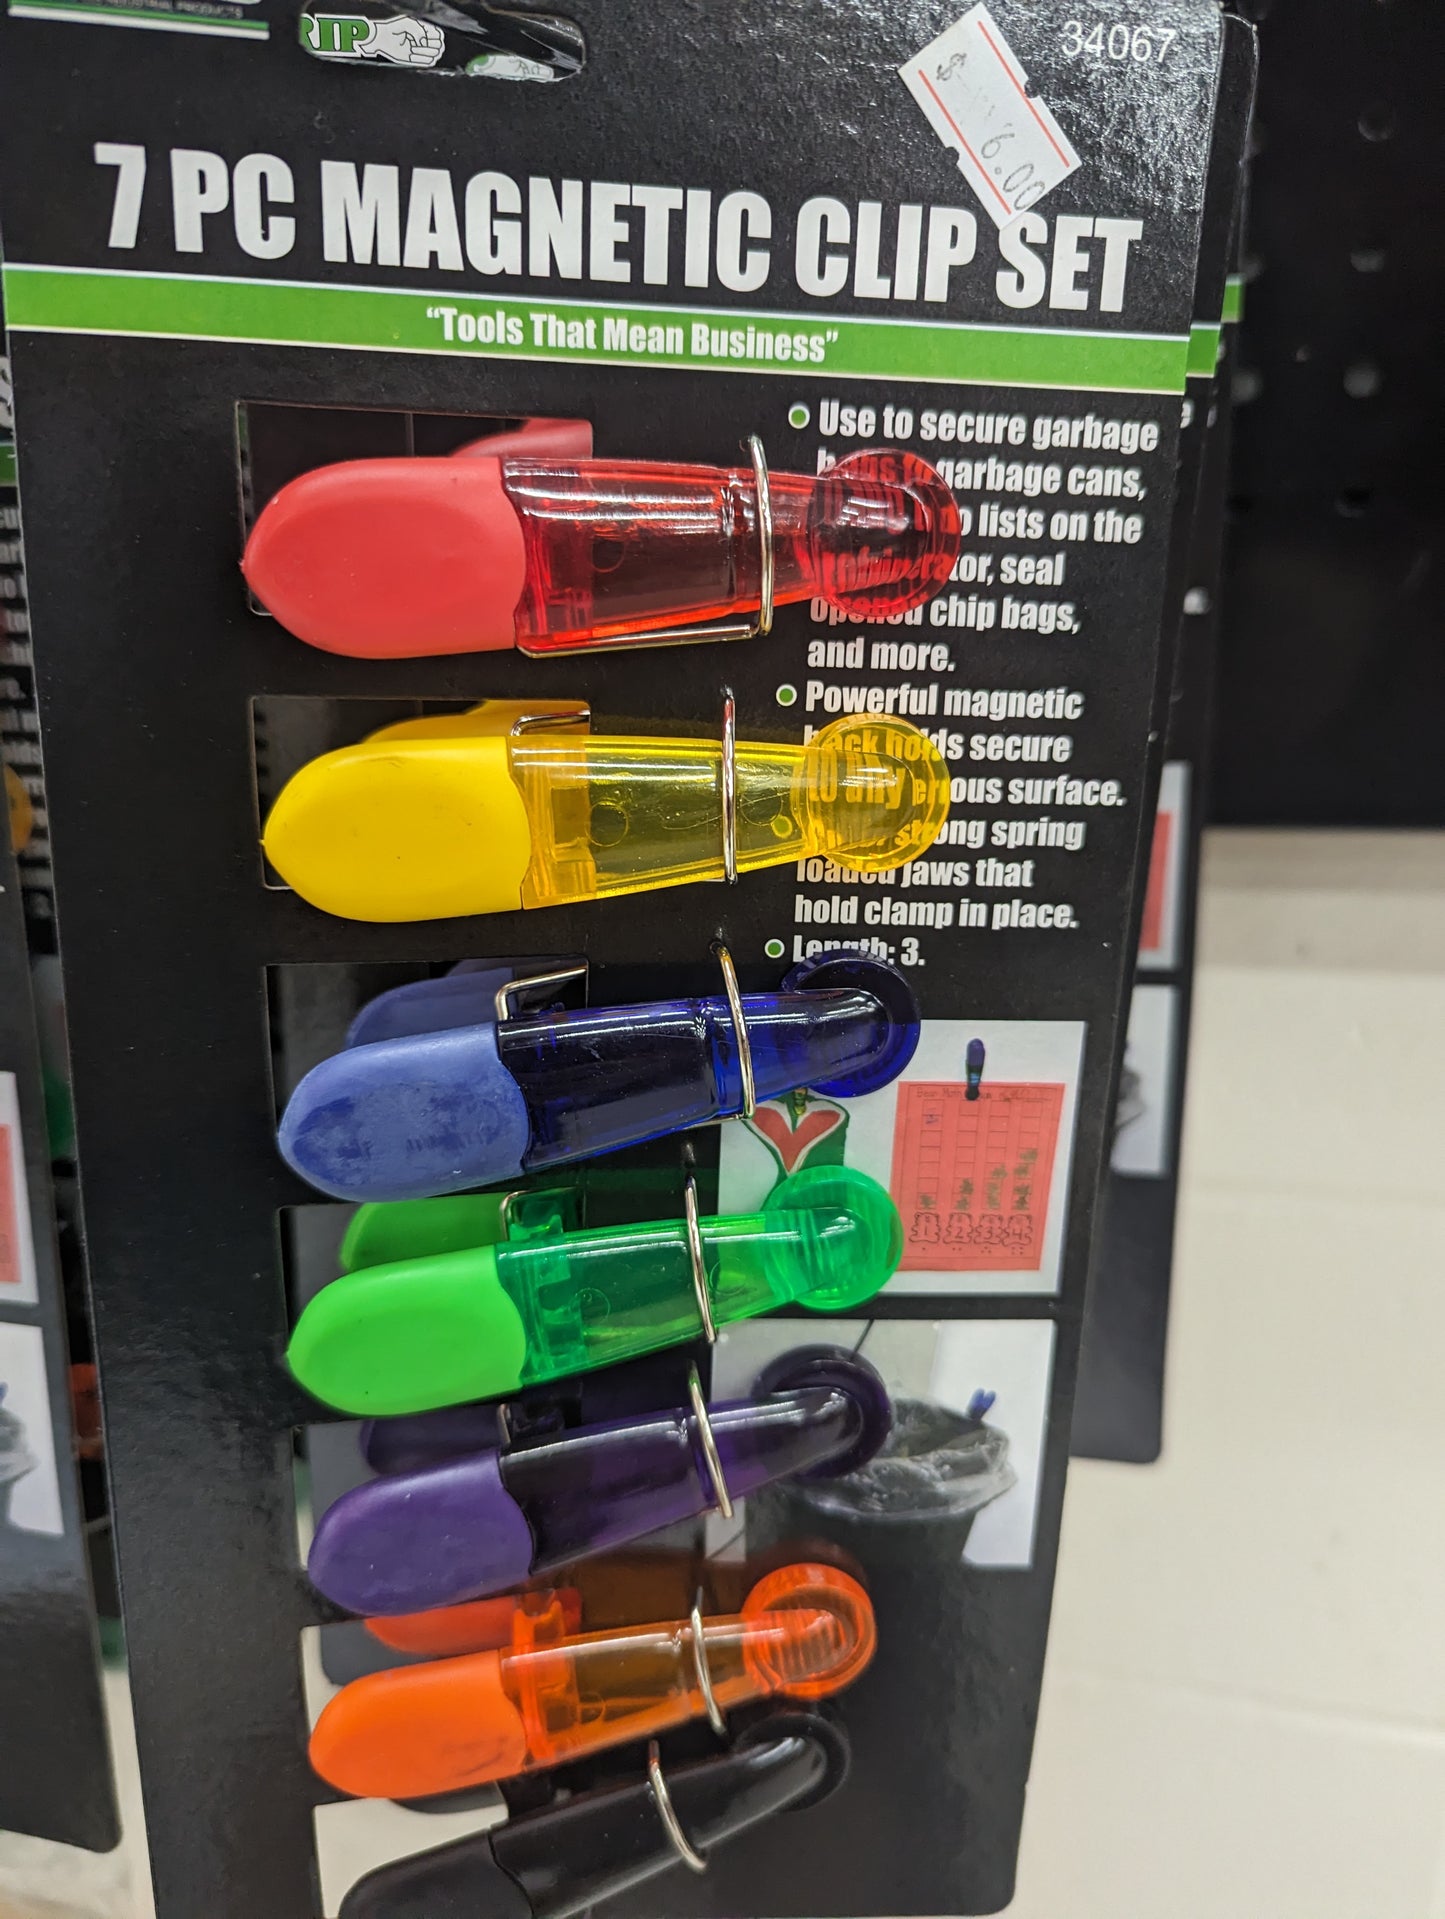 7 PC Magnetic Clip Set